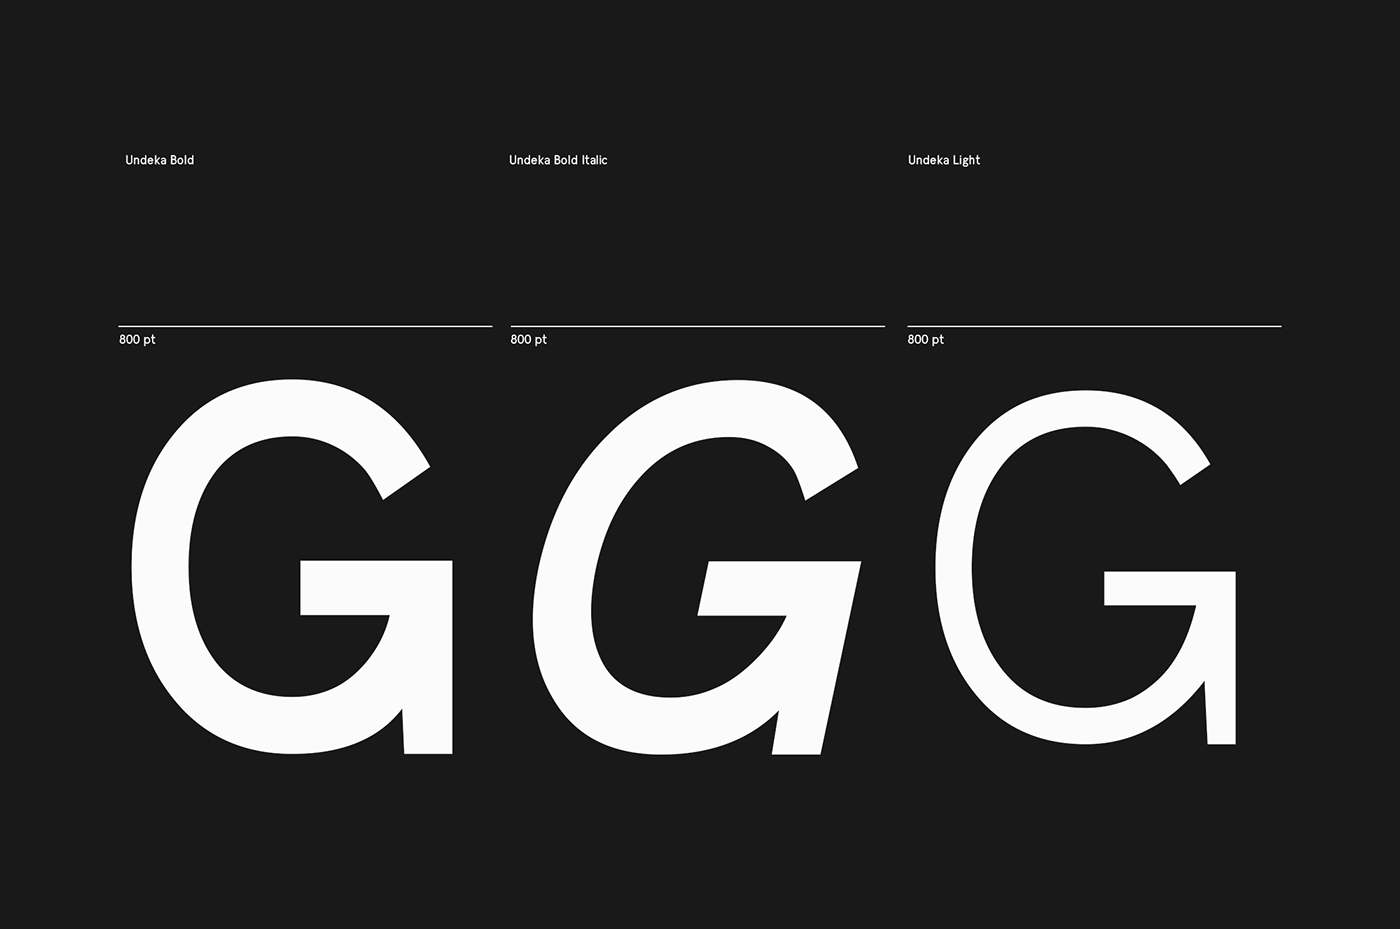 font Free font freebie Typeface undeka sans serif serif sans letters graphic